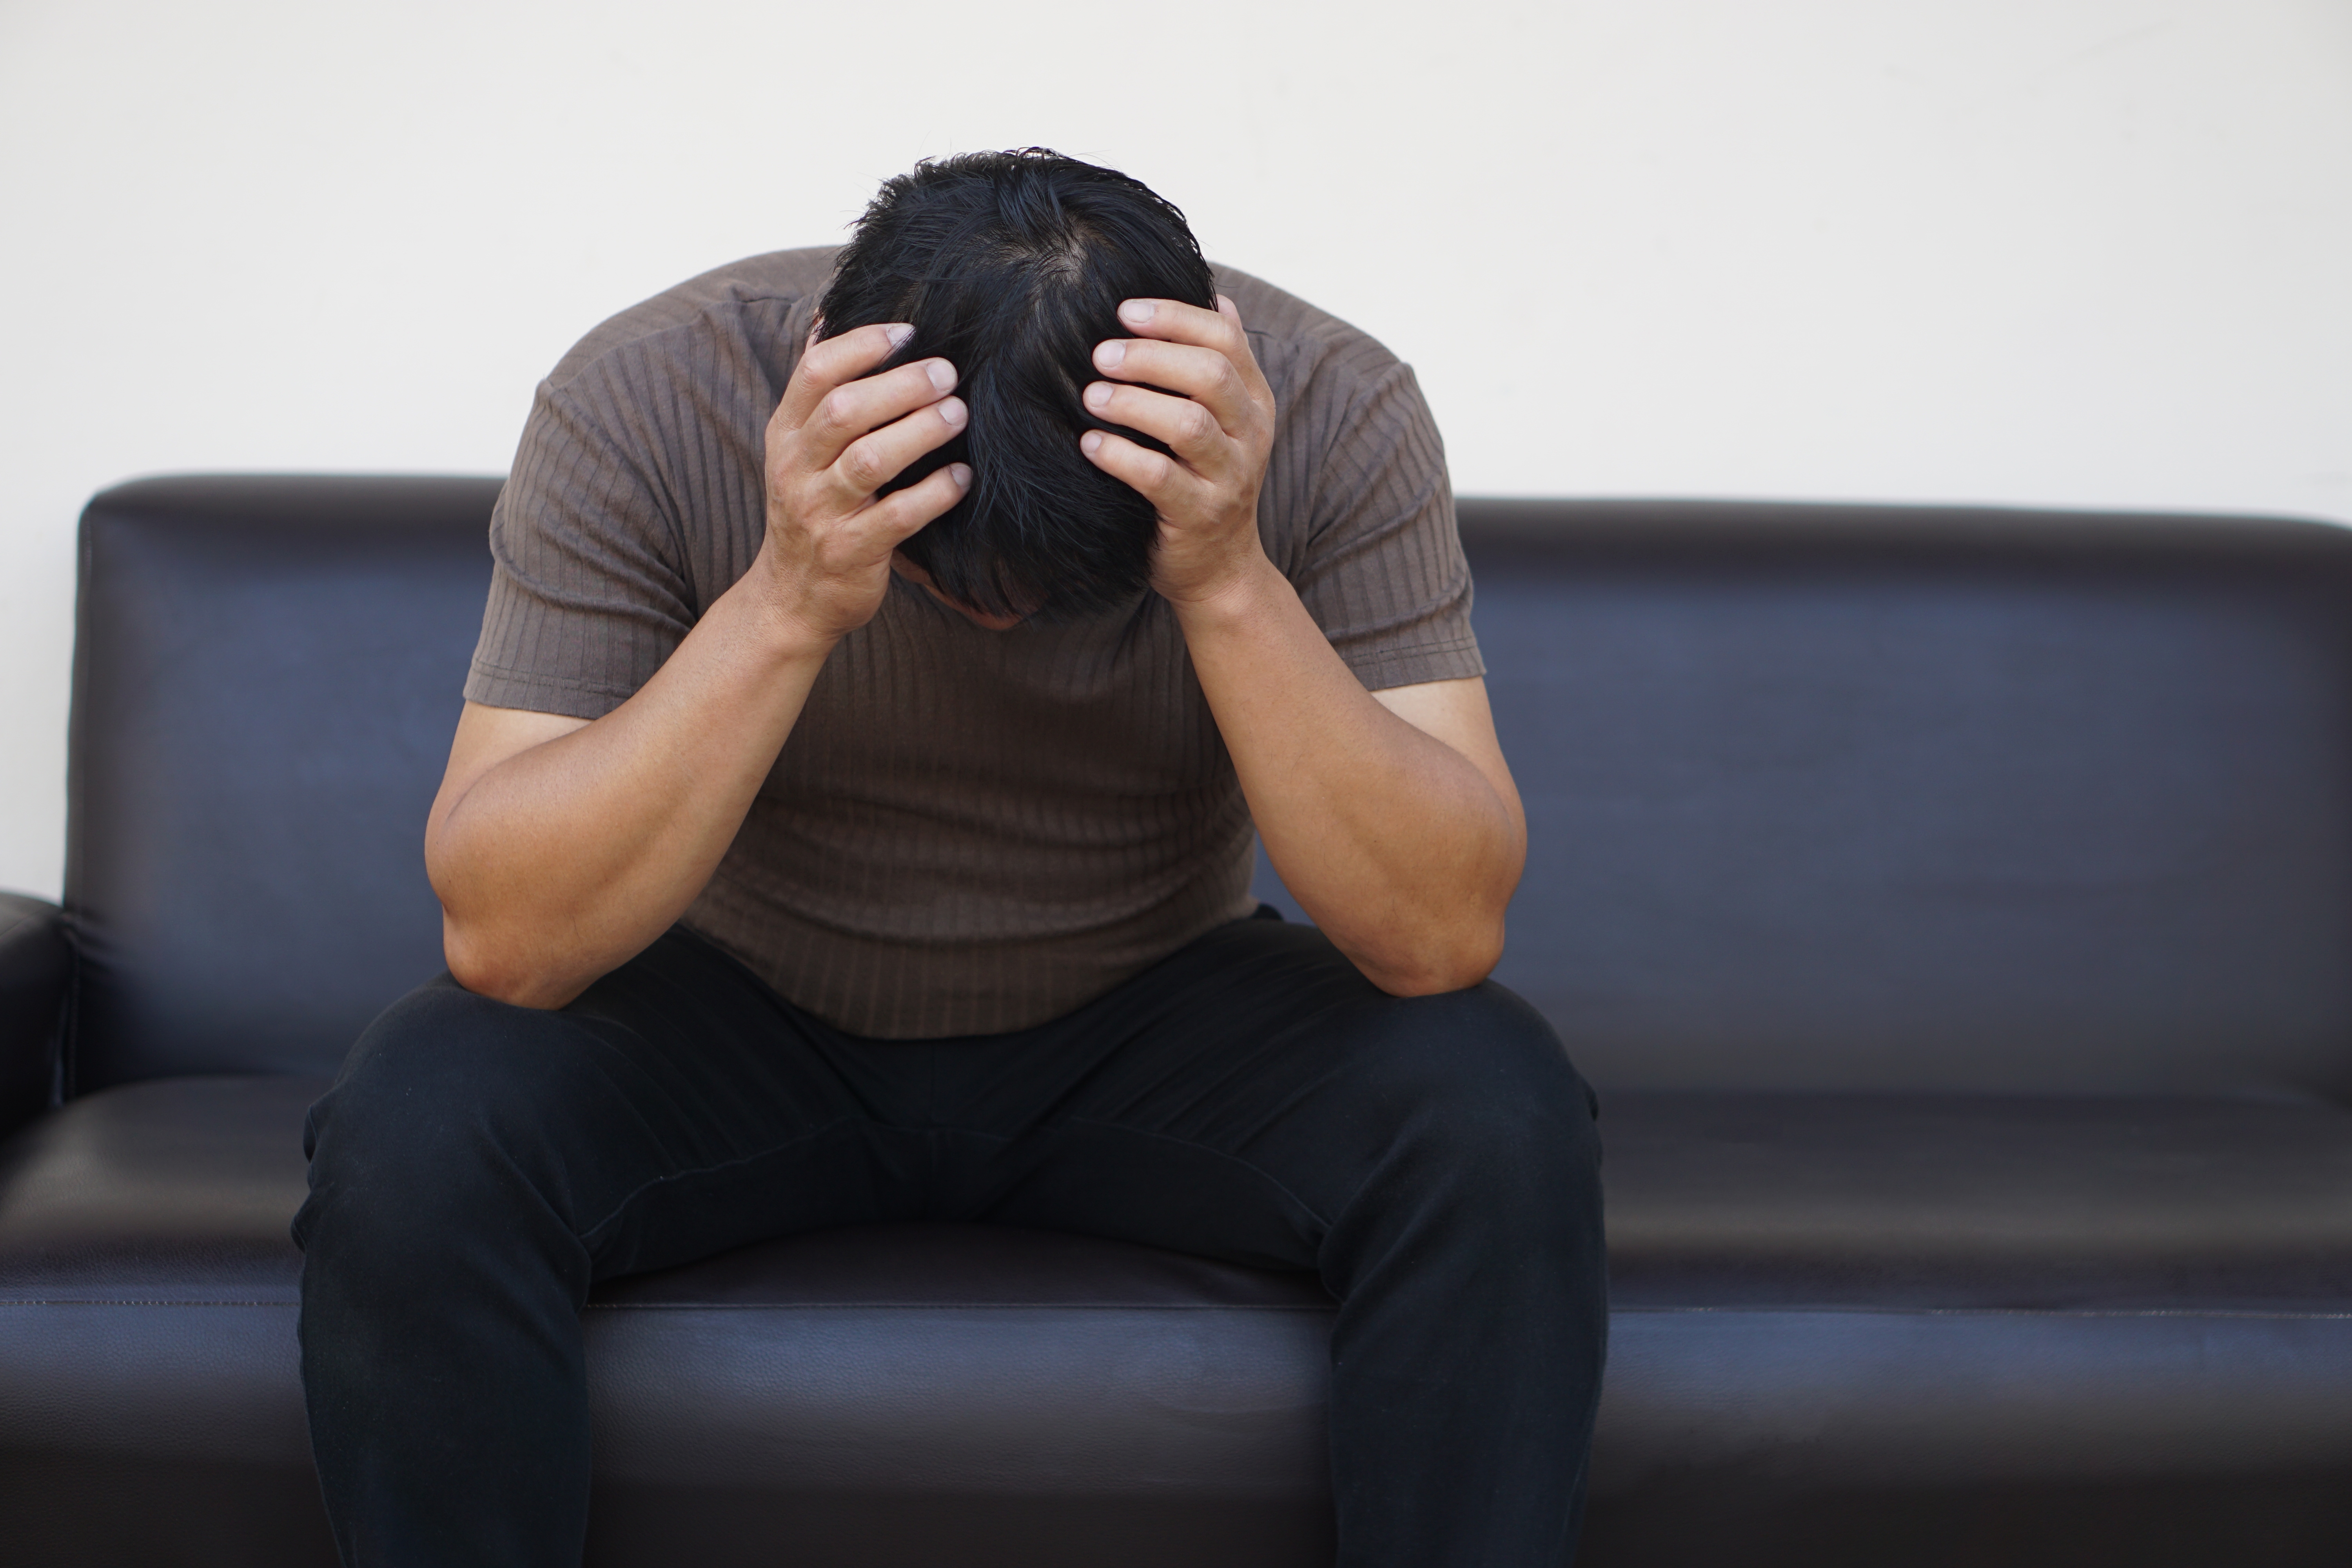 Man feeling depressed | Source: Shutterstock